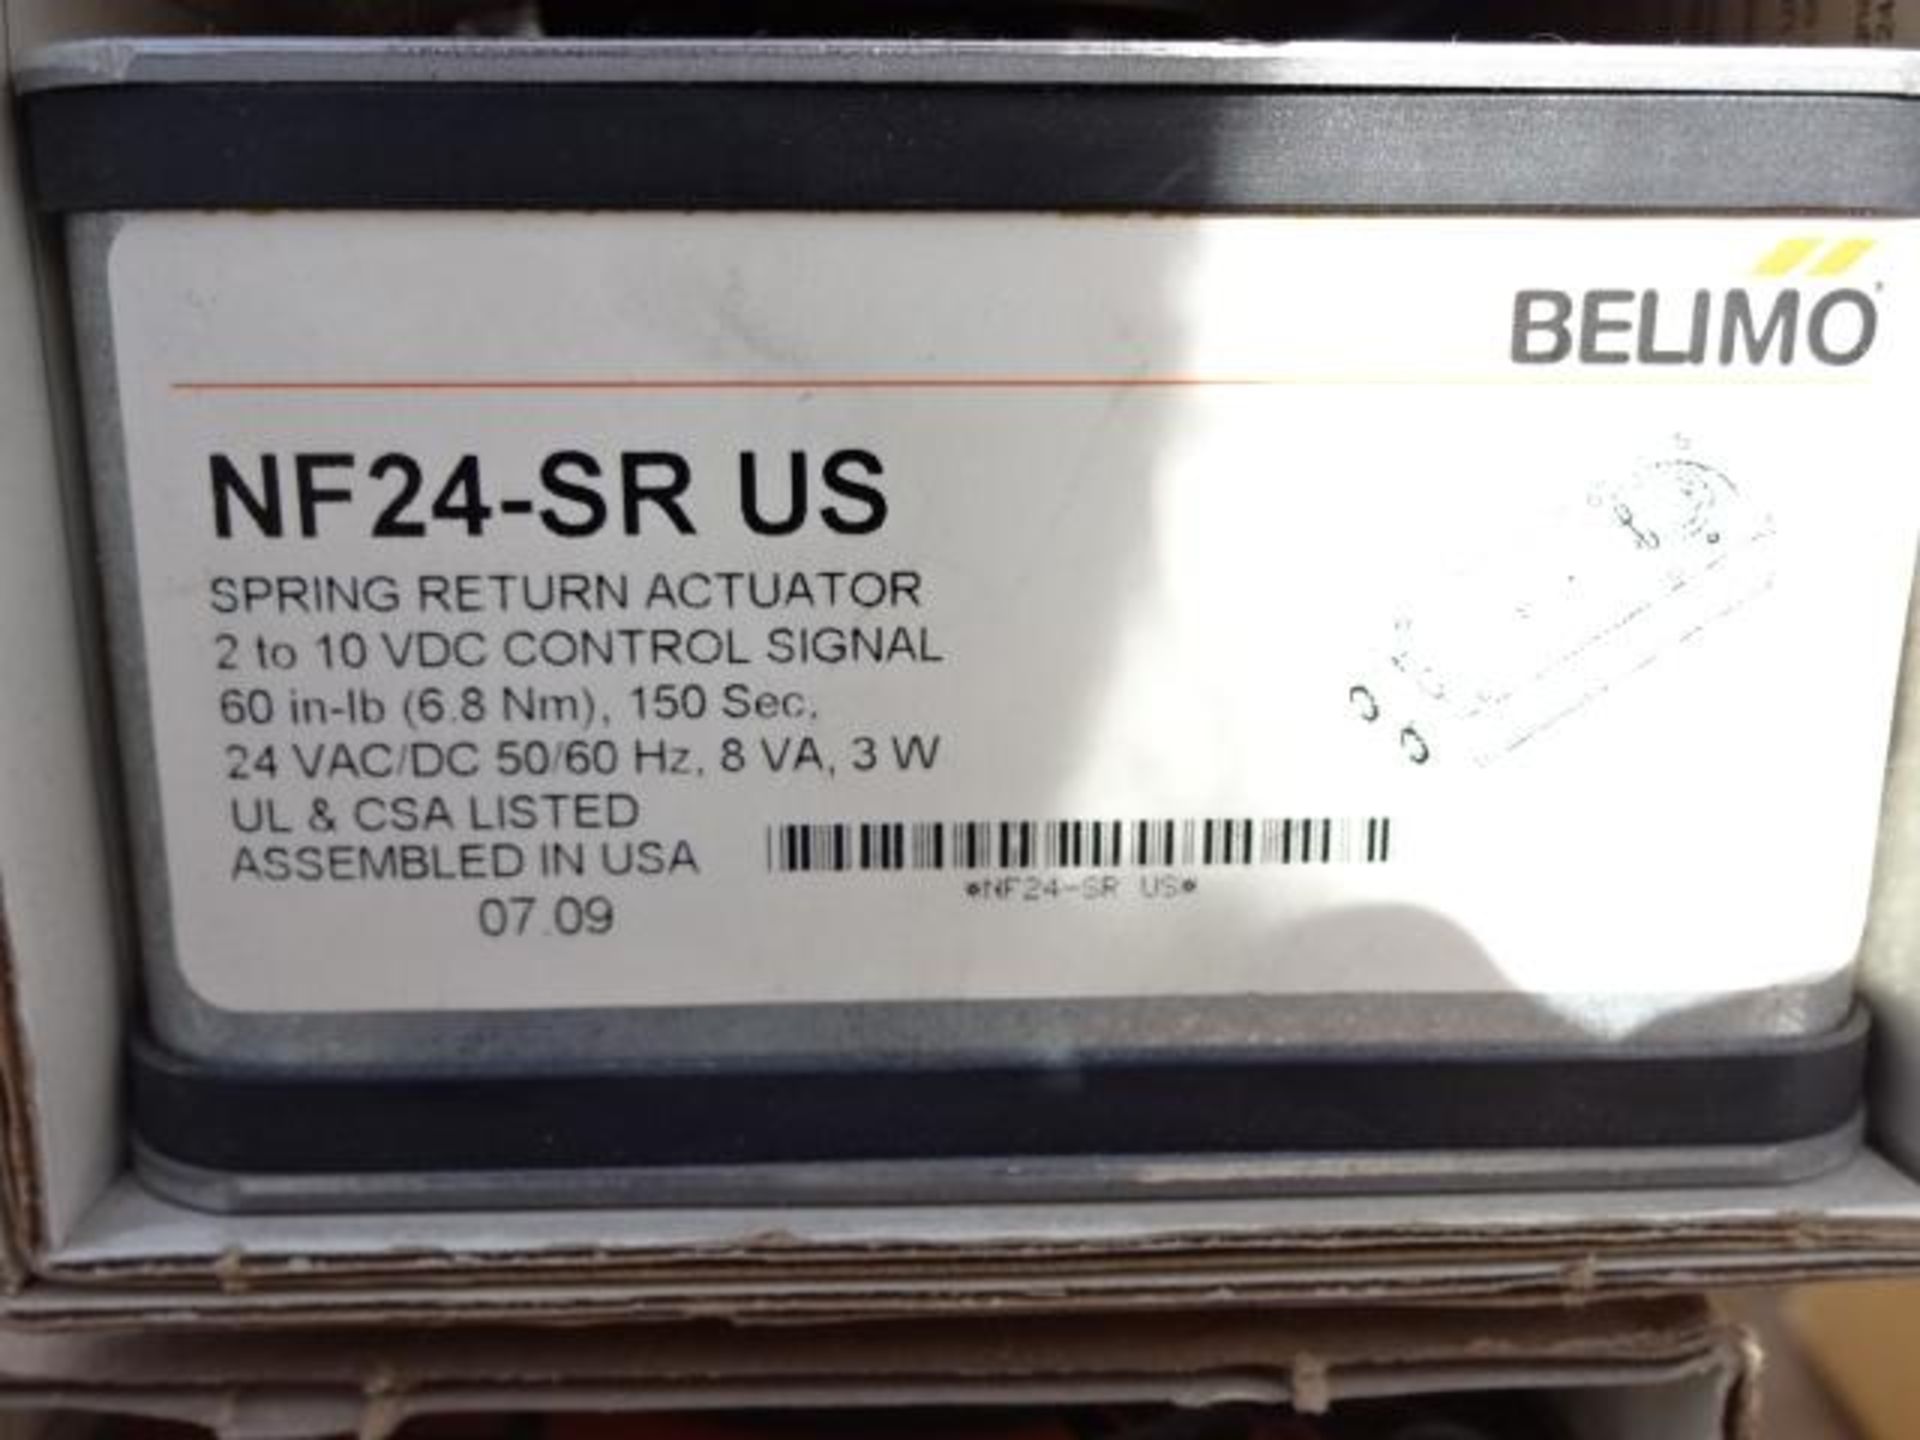 lot de 2 Actuateur belimo tf24-sr us *NEUF - lot of 2 actuator belimo tf24-sr us *NEW - Image 2 of 2